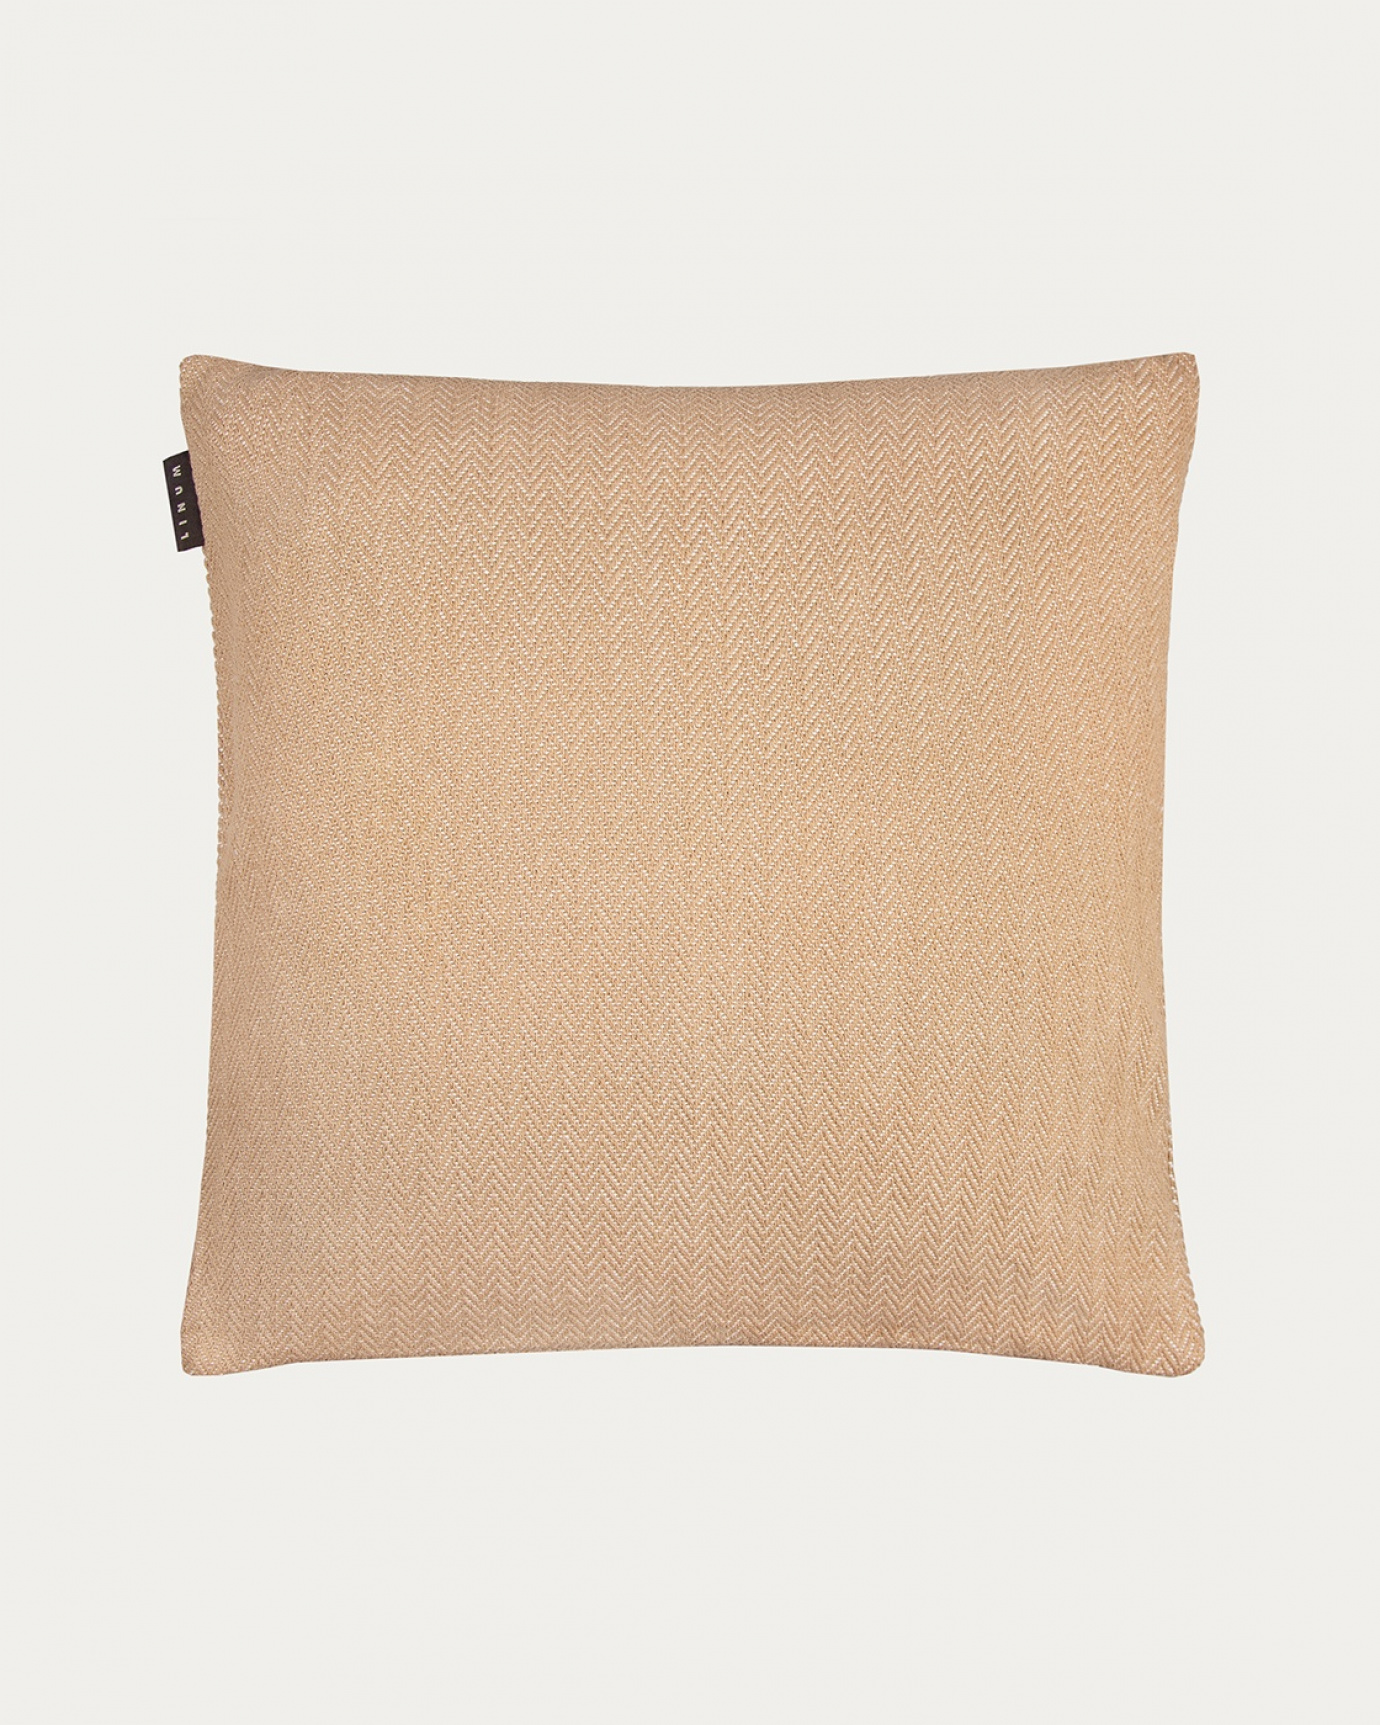 Produktbild kamelbraun SHEPARD Kissenhülle aus weicher Baumwolle mit dezentem Fischgrätmuster von LINUM DESIGN. Größe 50x50 cm.